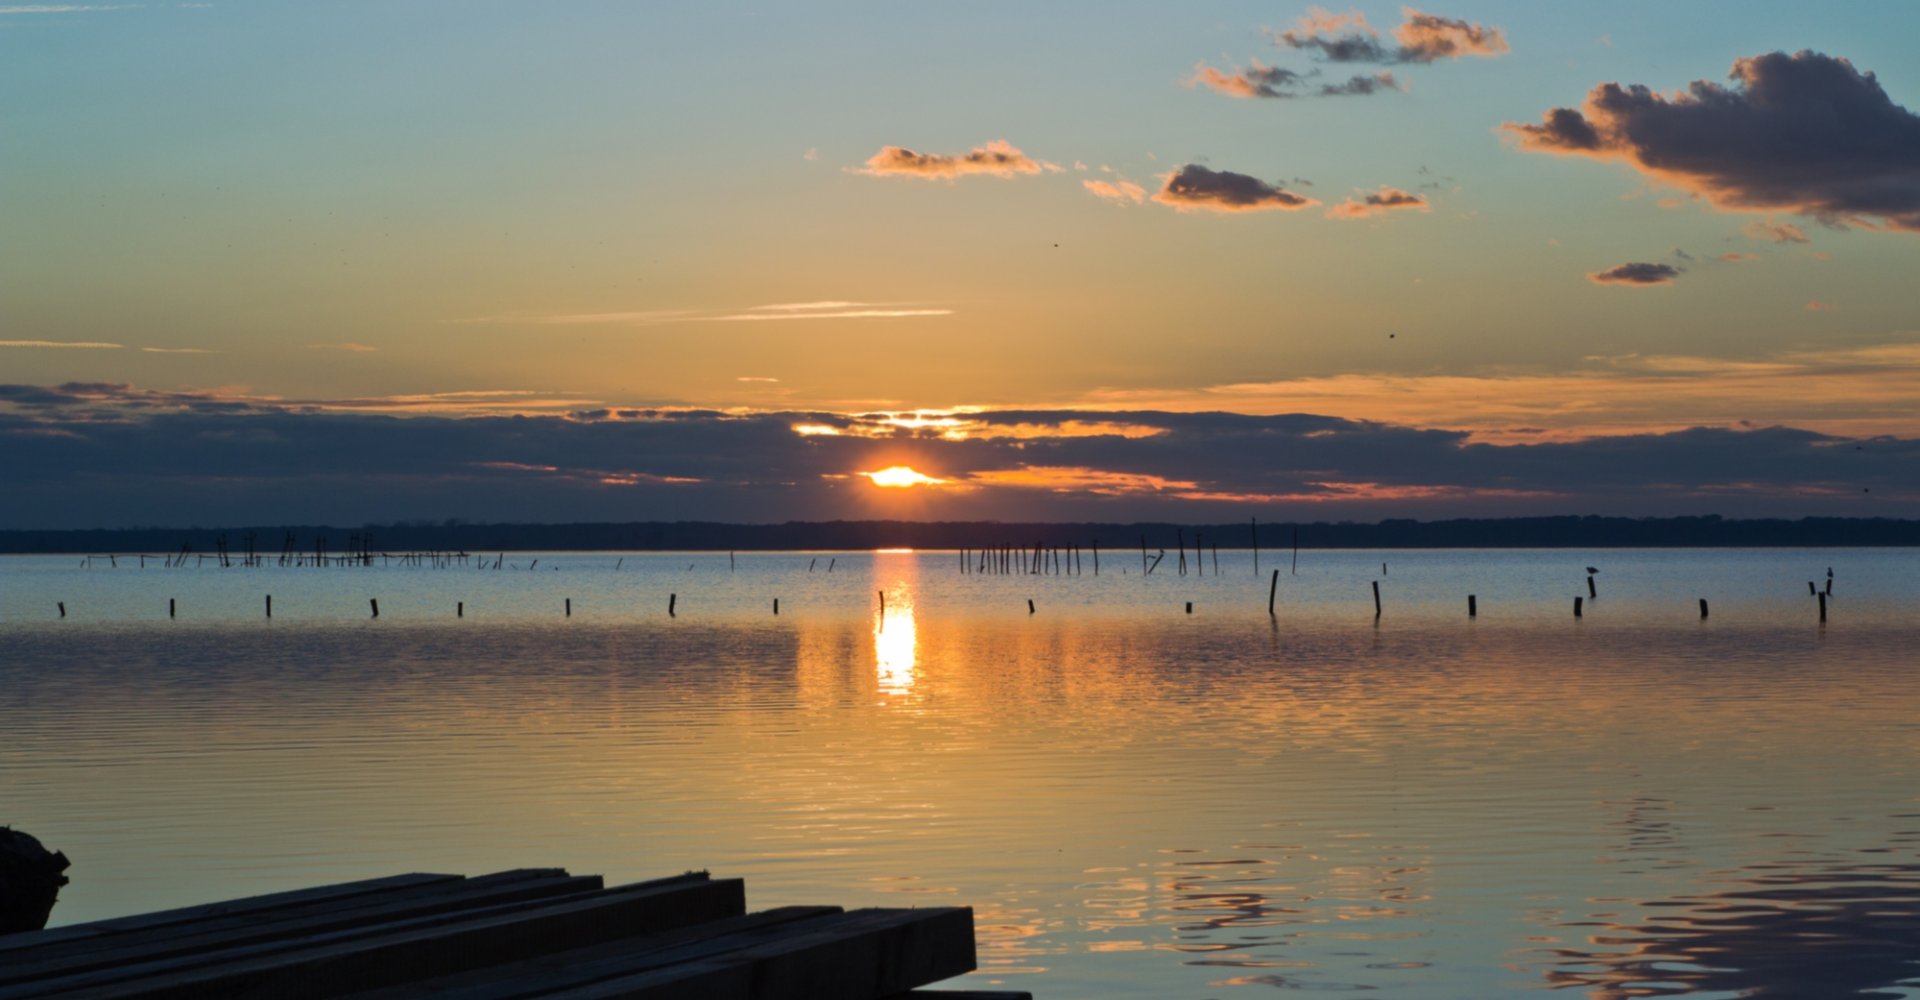 Massaciuccoli Lake at sunset